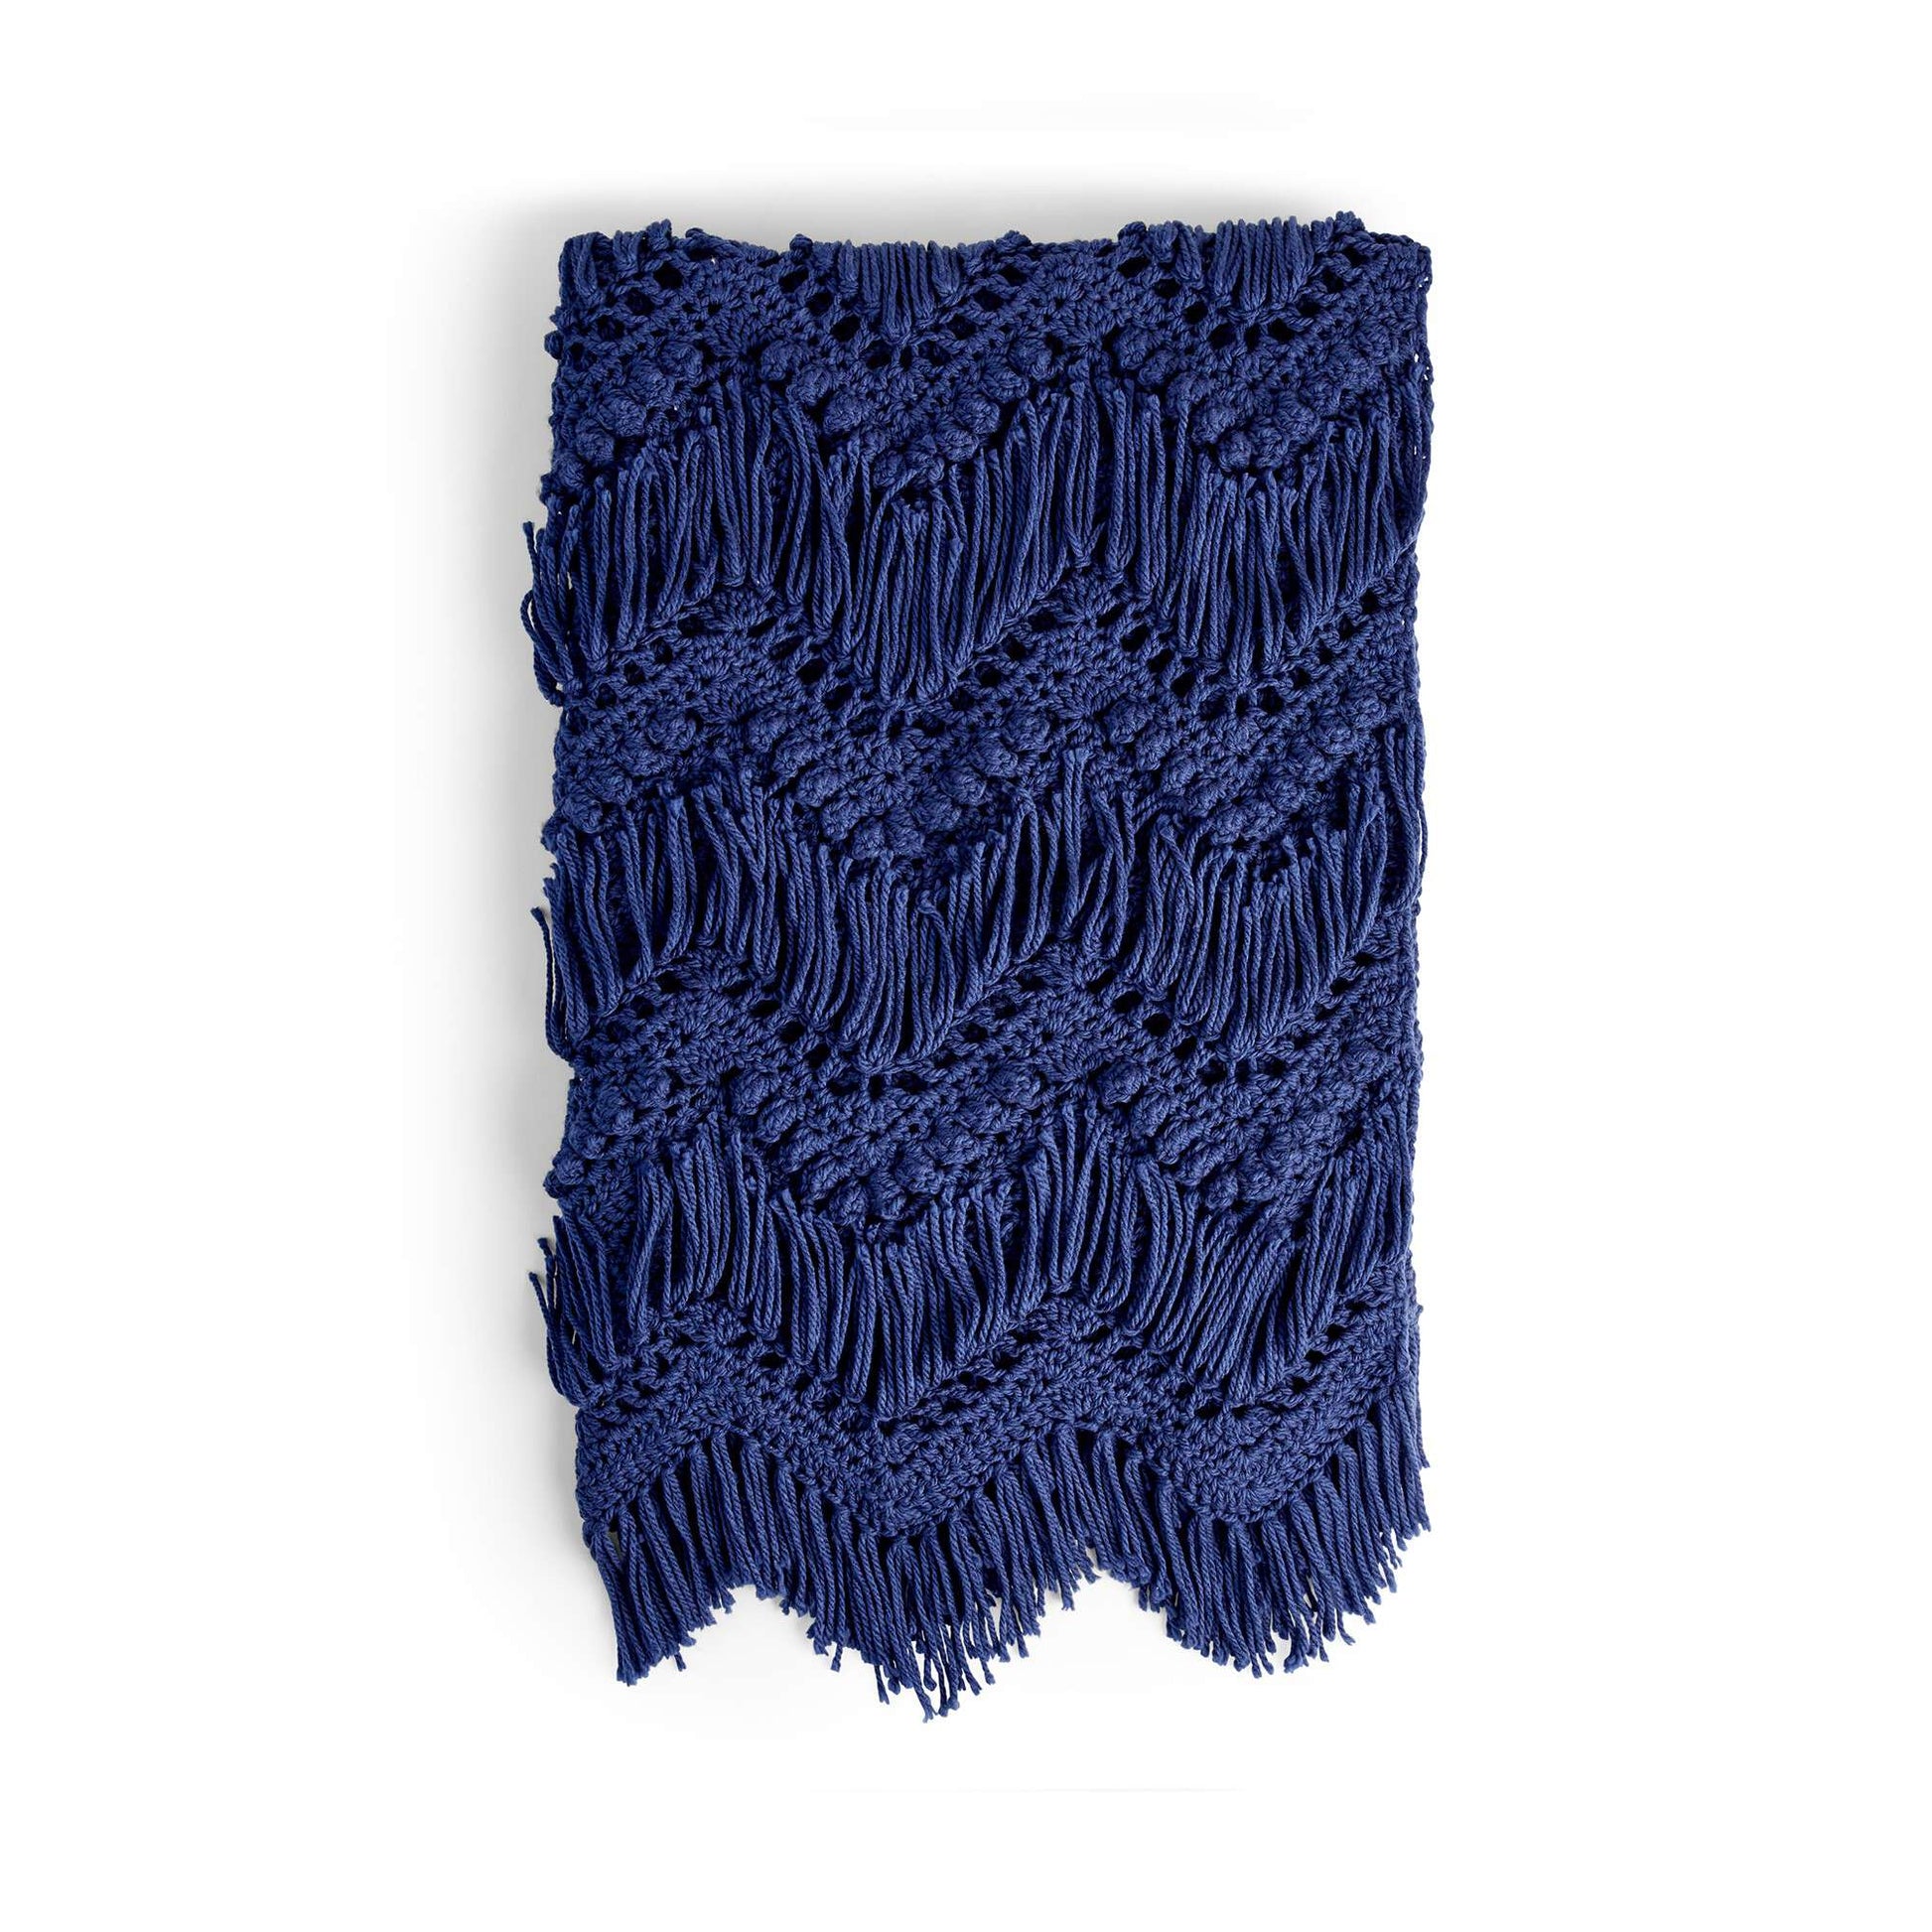 Free Bernat Bobble And Fringe Crochet Blanket Pattern